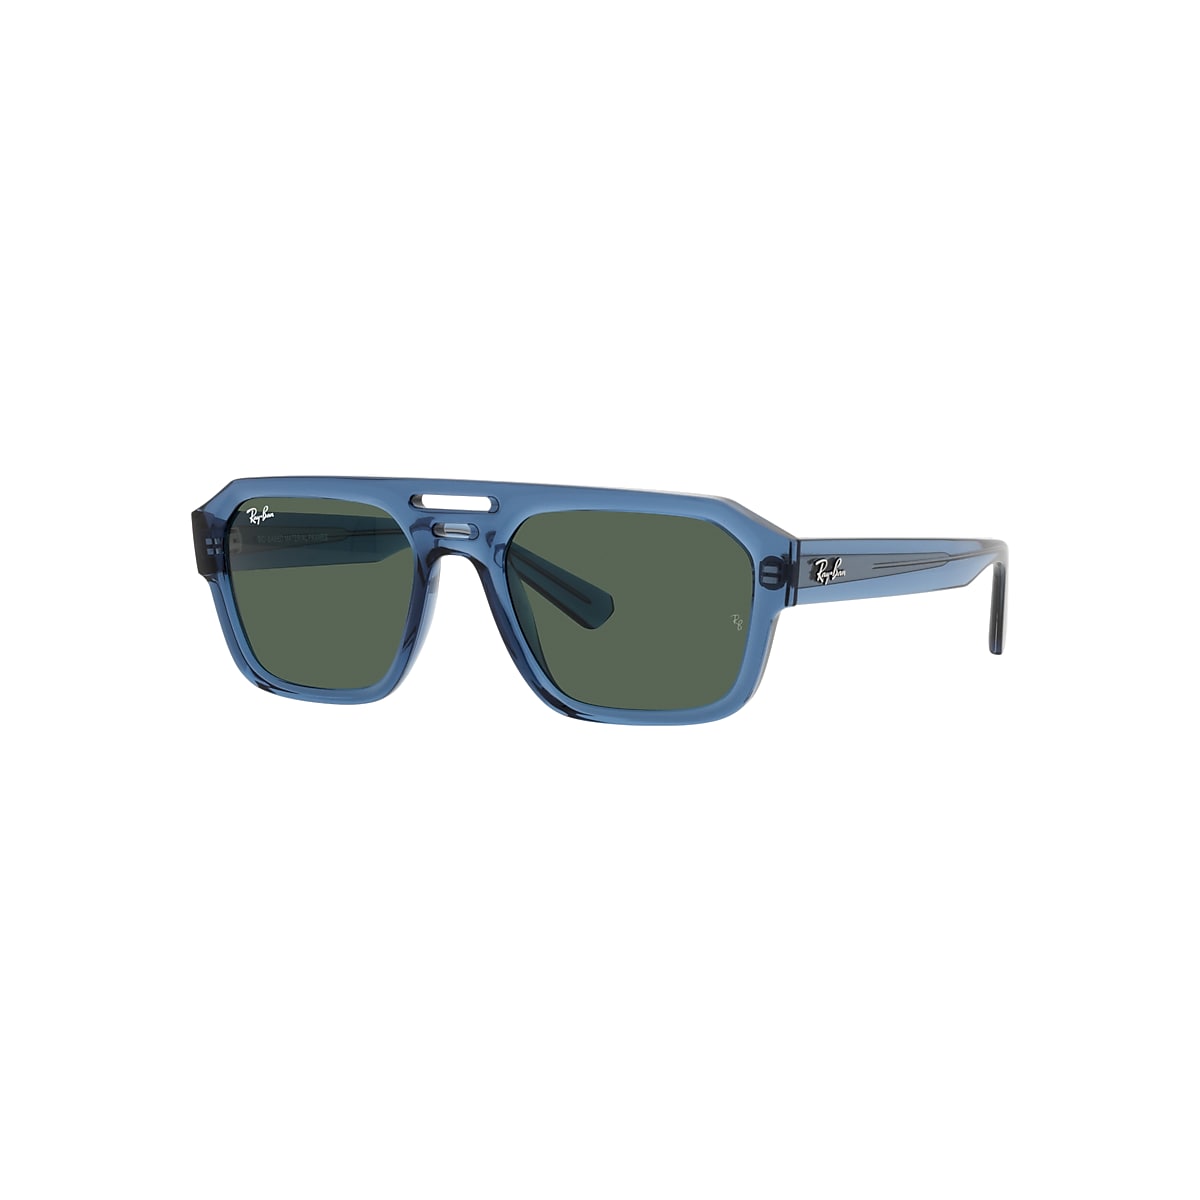 CORRIGAN BIO-BASED LIMITED Sunglasses in Transparent Dark 